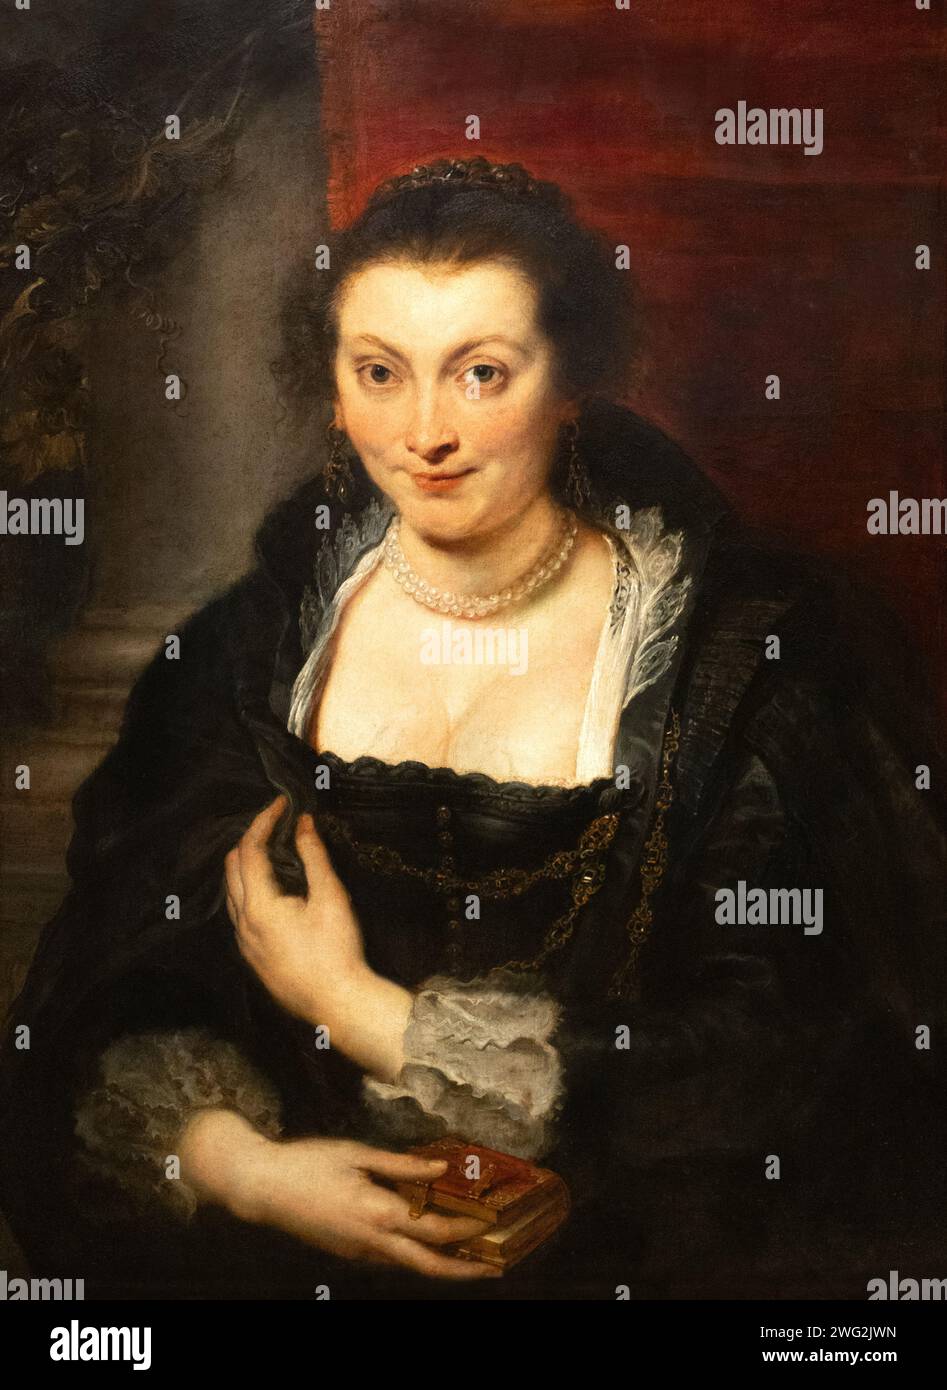 Pierre Paul Rubens peinture ; Isabella Brant 1626 ; Rubens portrait de sa première femme, peut avoir été fait après sa mort. portrait féminin du xviie siècle. Banque D'Images